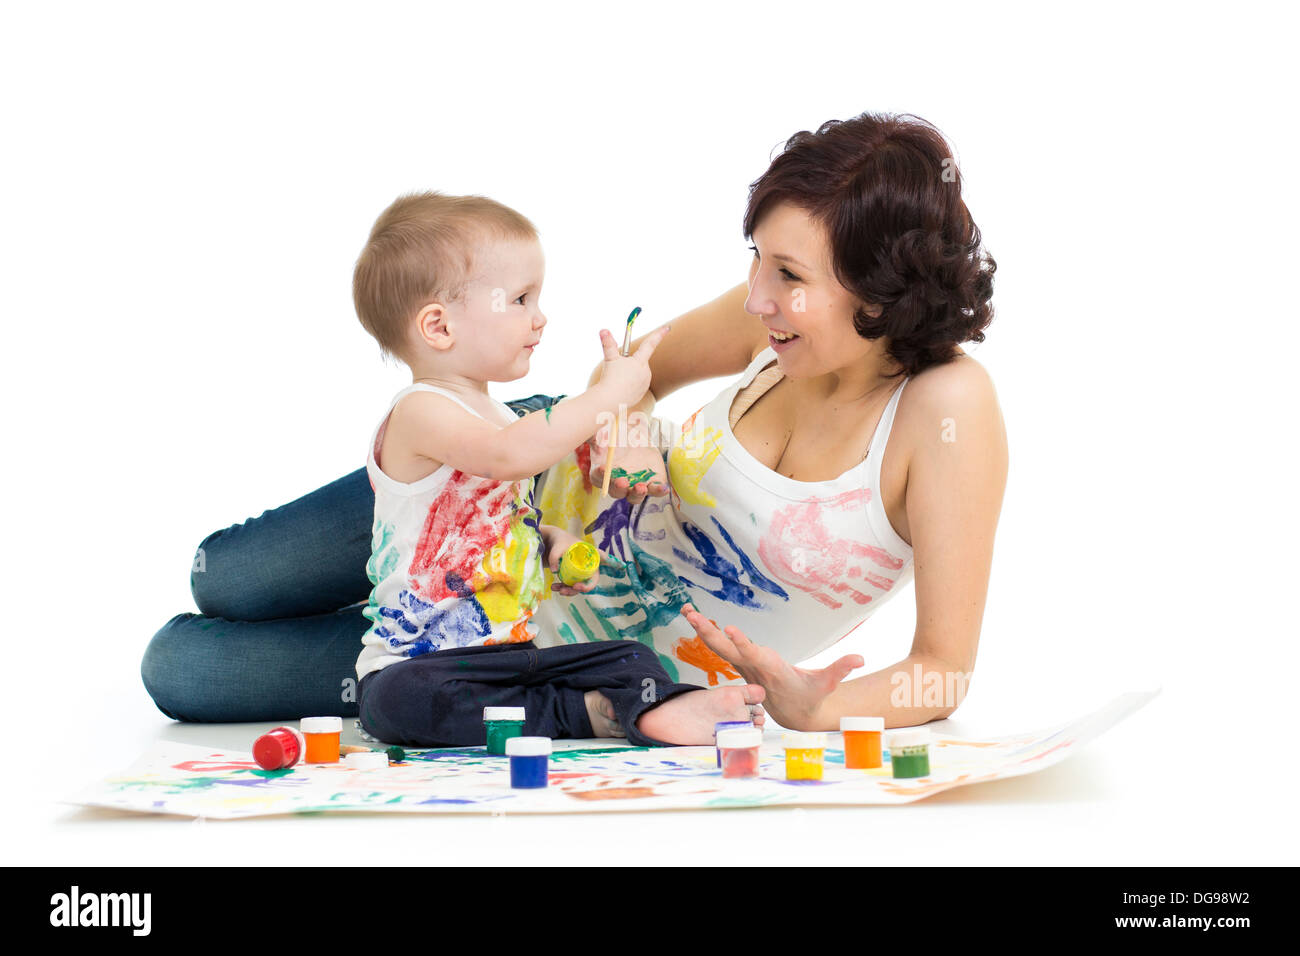 Mutter mit Kind junge zeichnen und malen zusammen Stockfoto